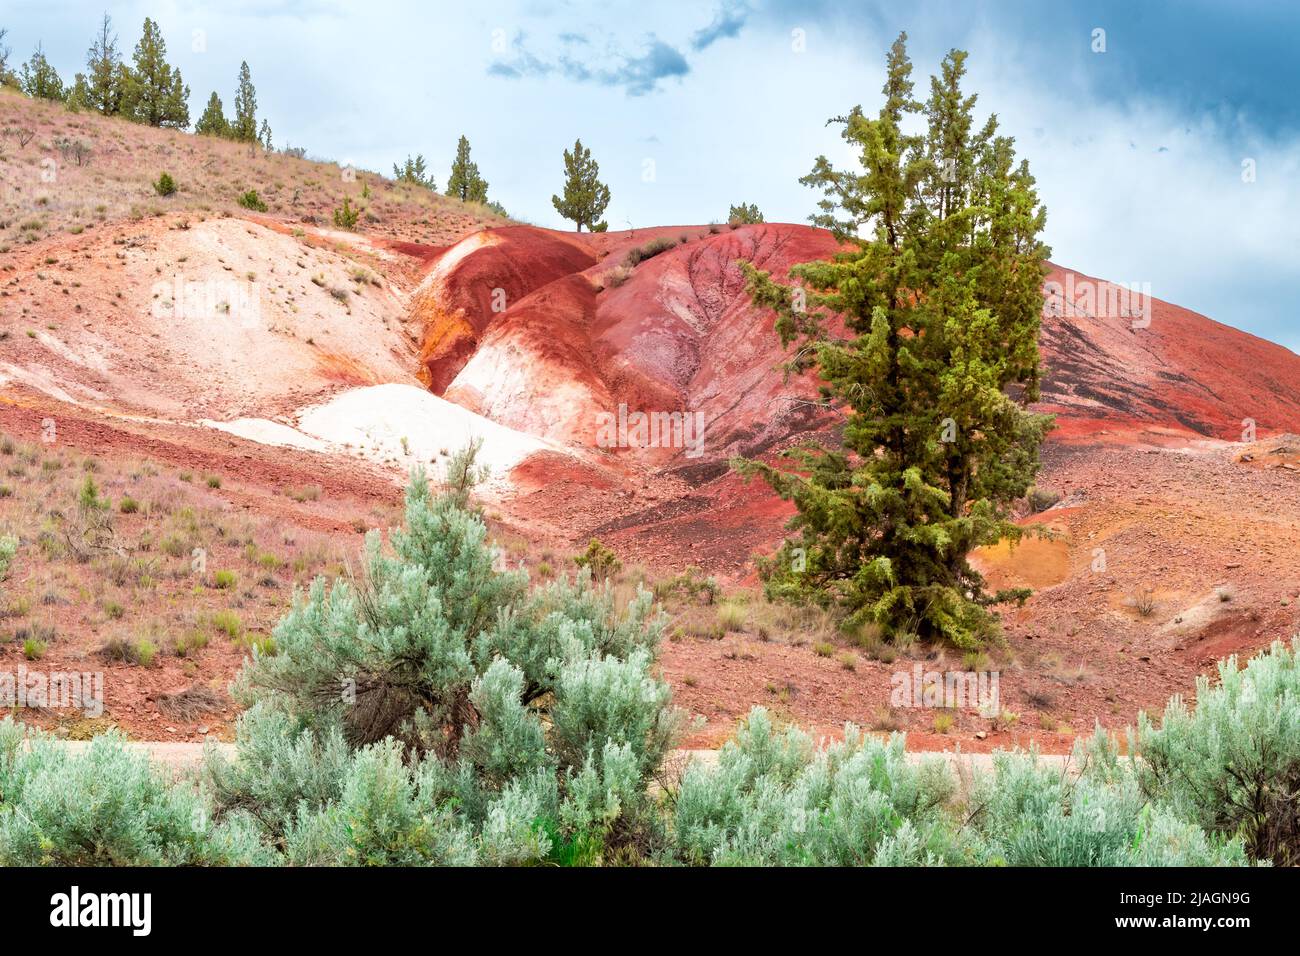 Wunderschöne, malerische und farbenfrohe Painted Hills aus Oregon, USA. Wüstenlandschaft mit grauen Wolken. Natürliche Landbildung, Geologie. Stockfoto